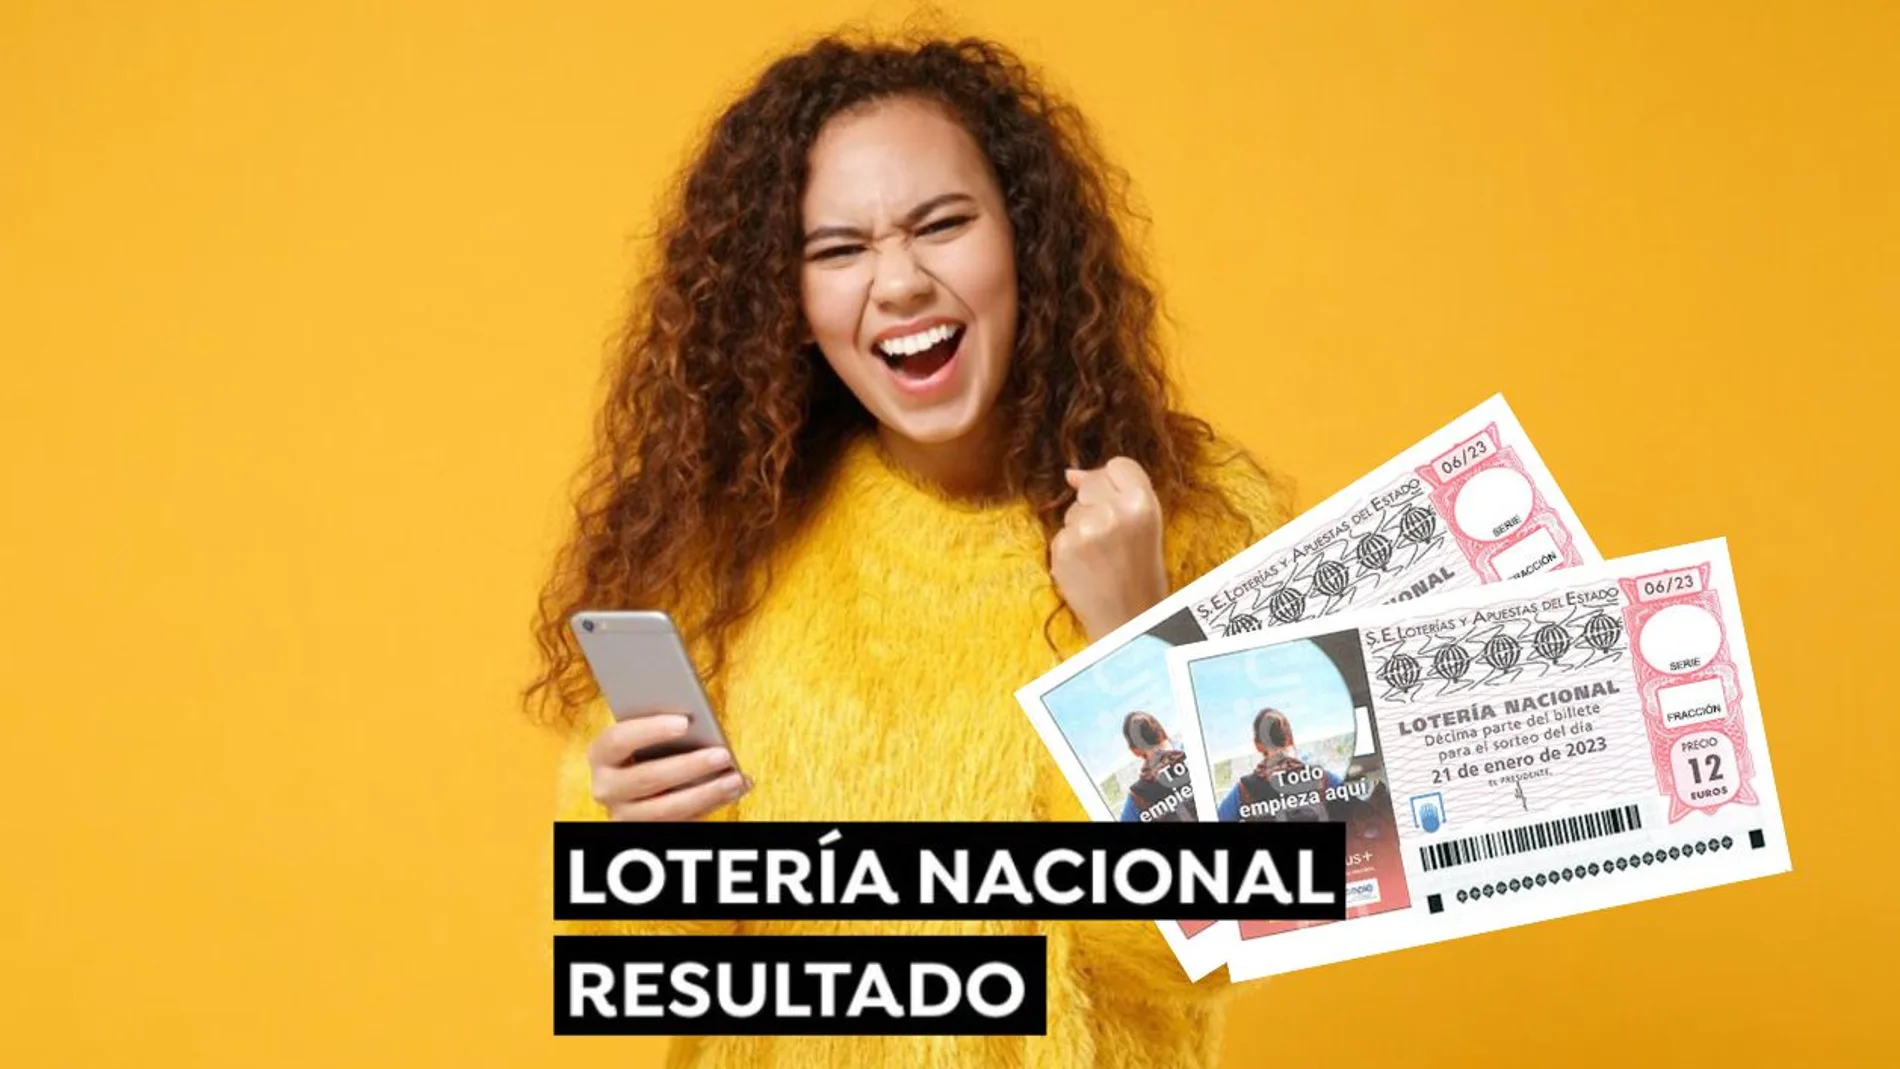 Resultado del Sorteo Especial de Enero 2023 de la Lotería Nacional